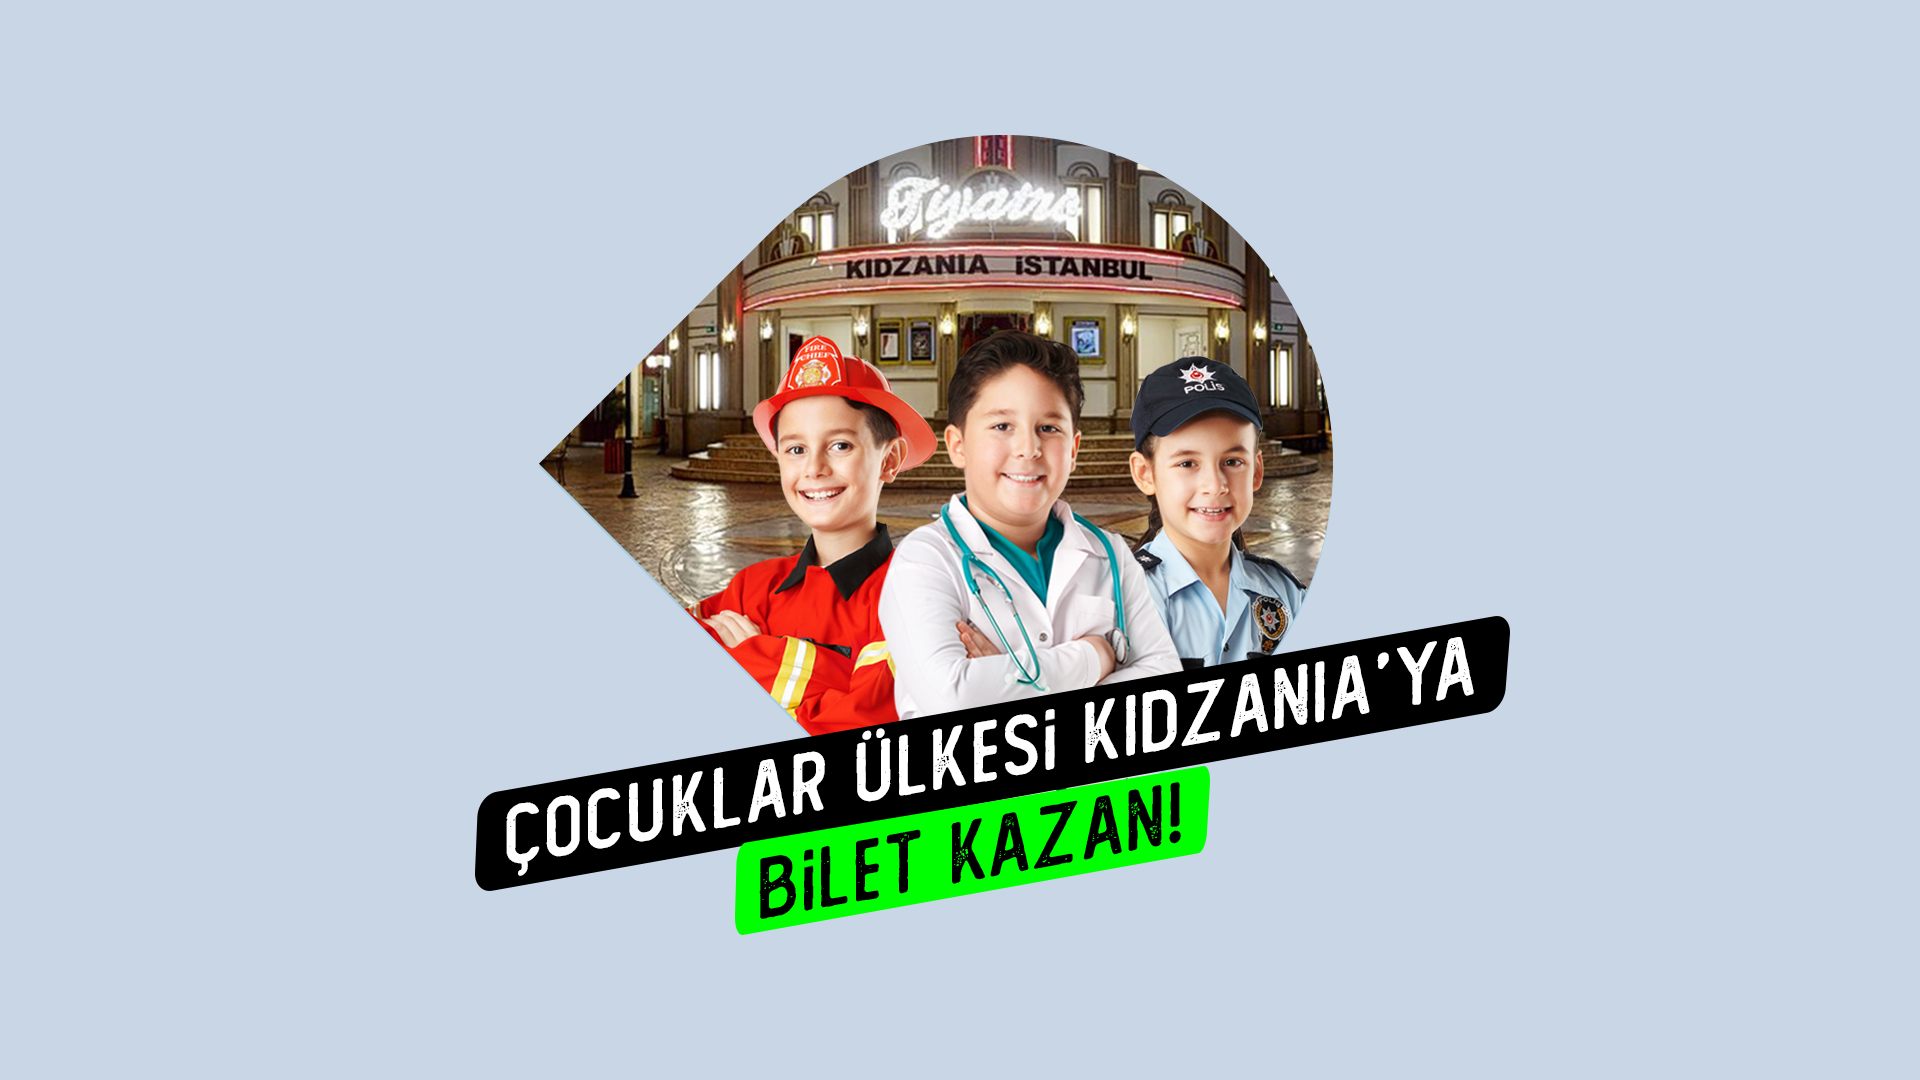 Akasya KidZania'da Ücretsiz çocuk bileti fırsatı!